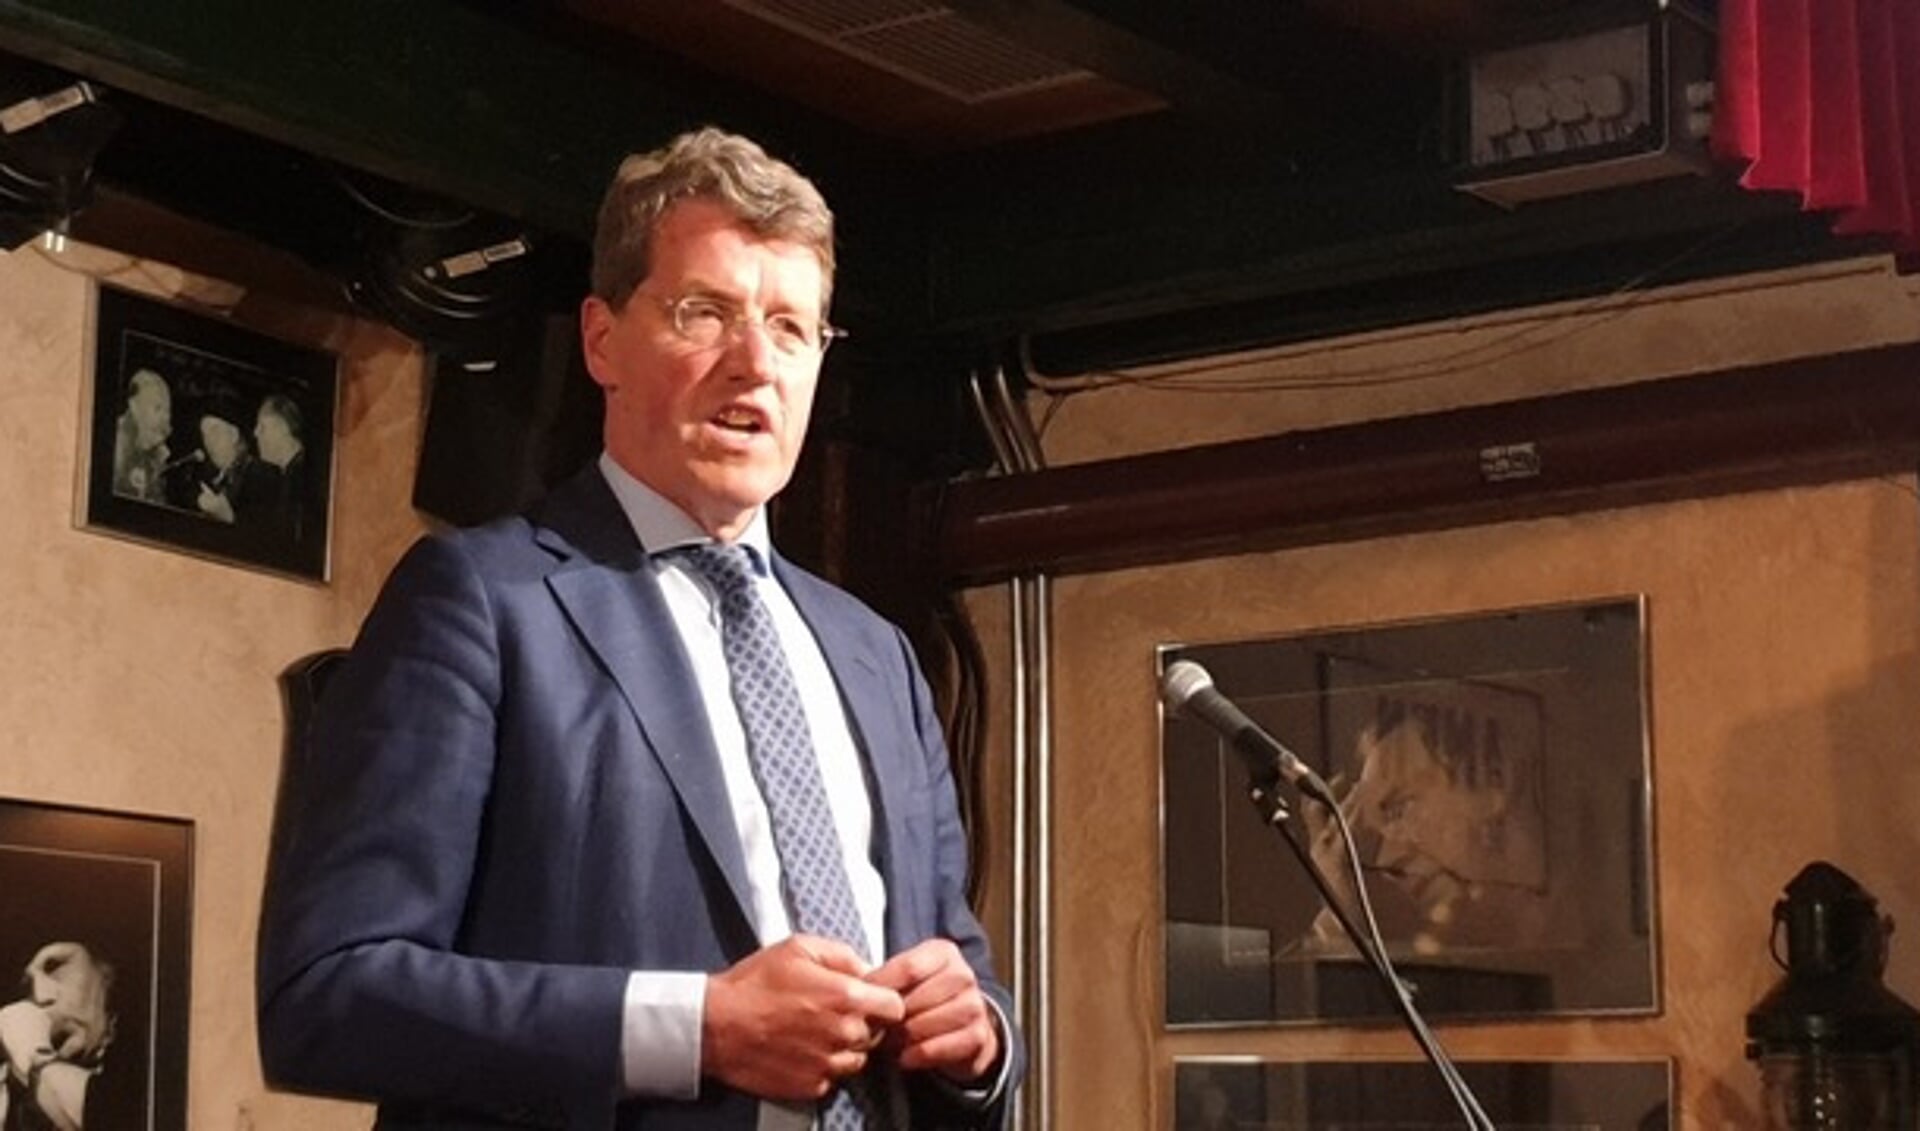 Voorzitter Eric van Oosterhout tijdens de presentatie in café De Amer. (eigen foto)